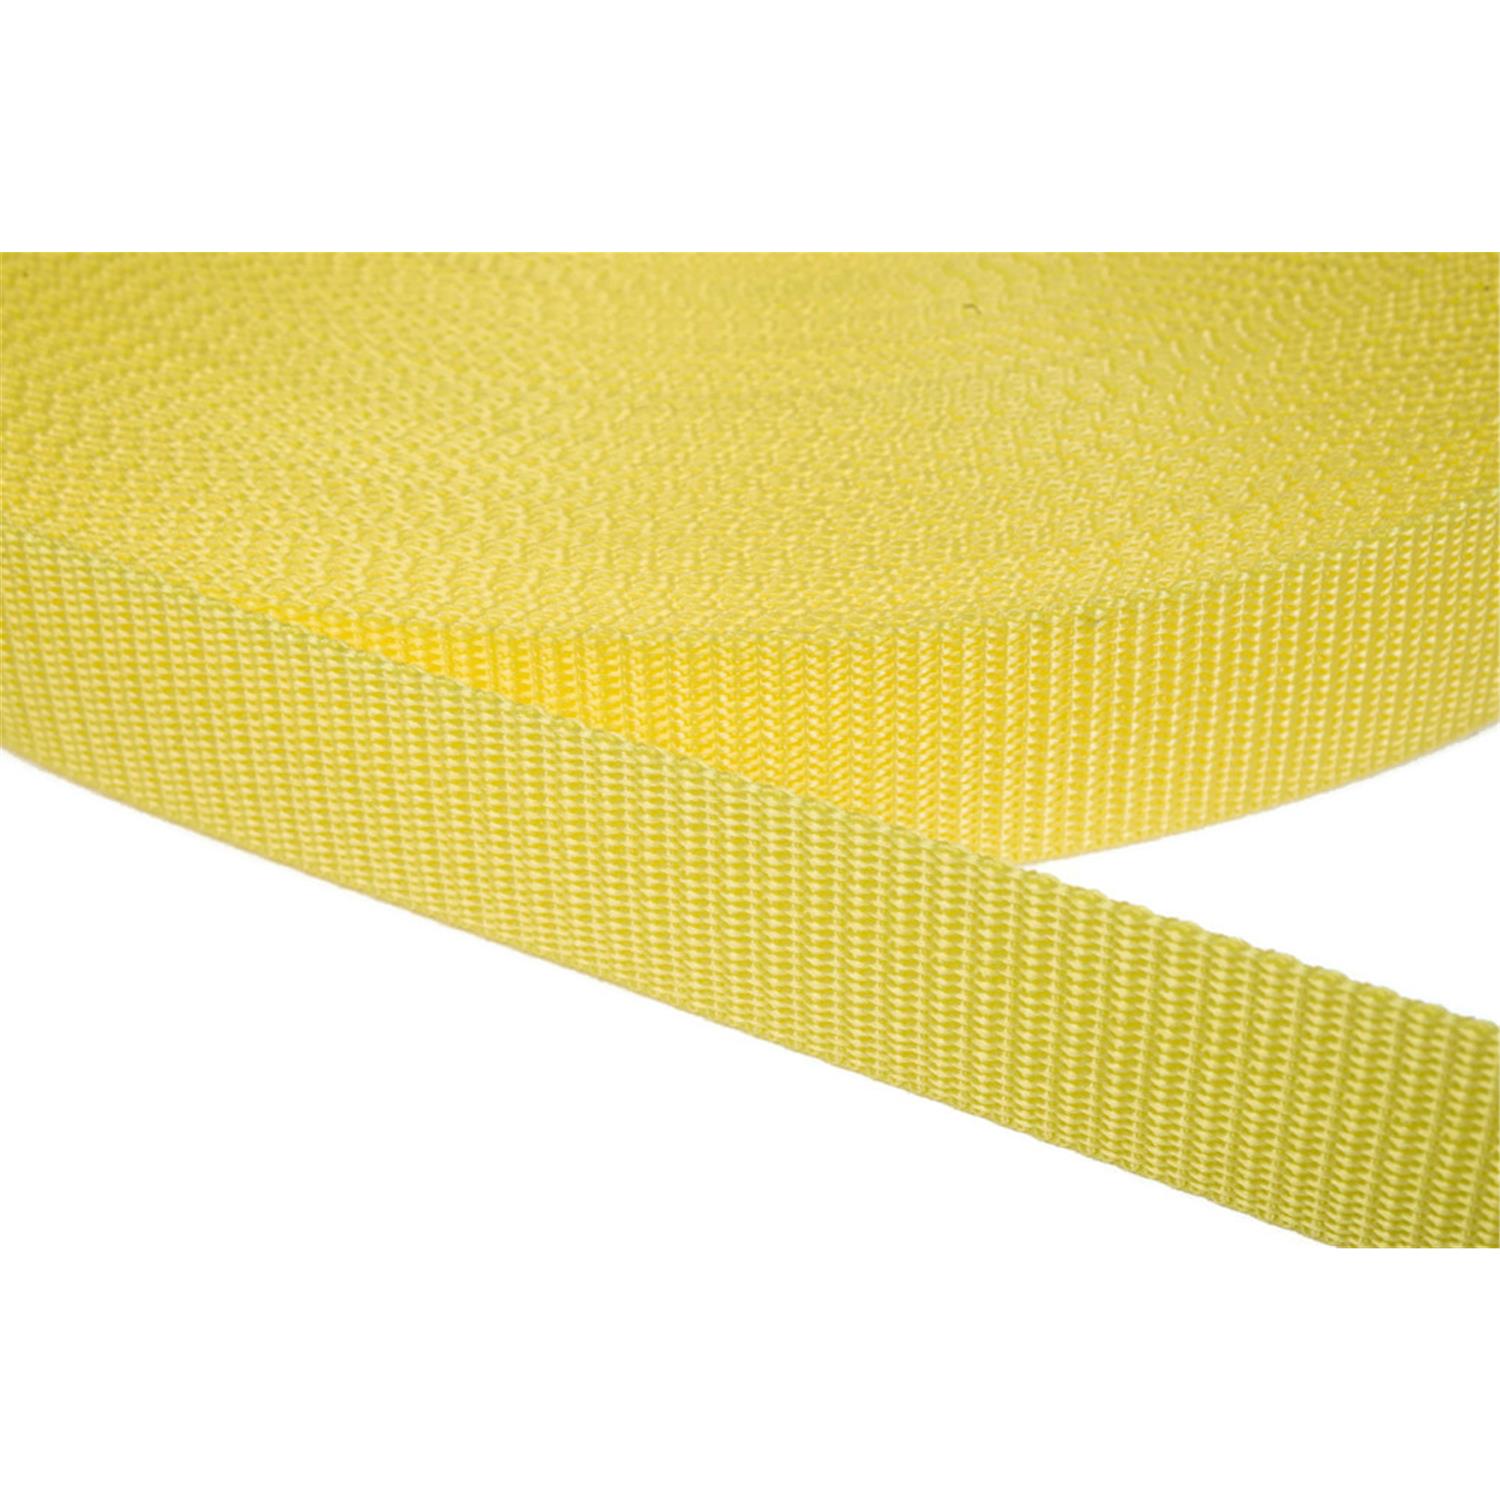 Gurtband 25mm breit aus Polypropylen in 41 Farben 09 - zitronengelb 6 Meter